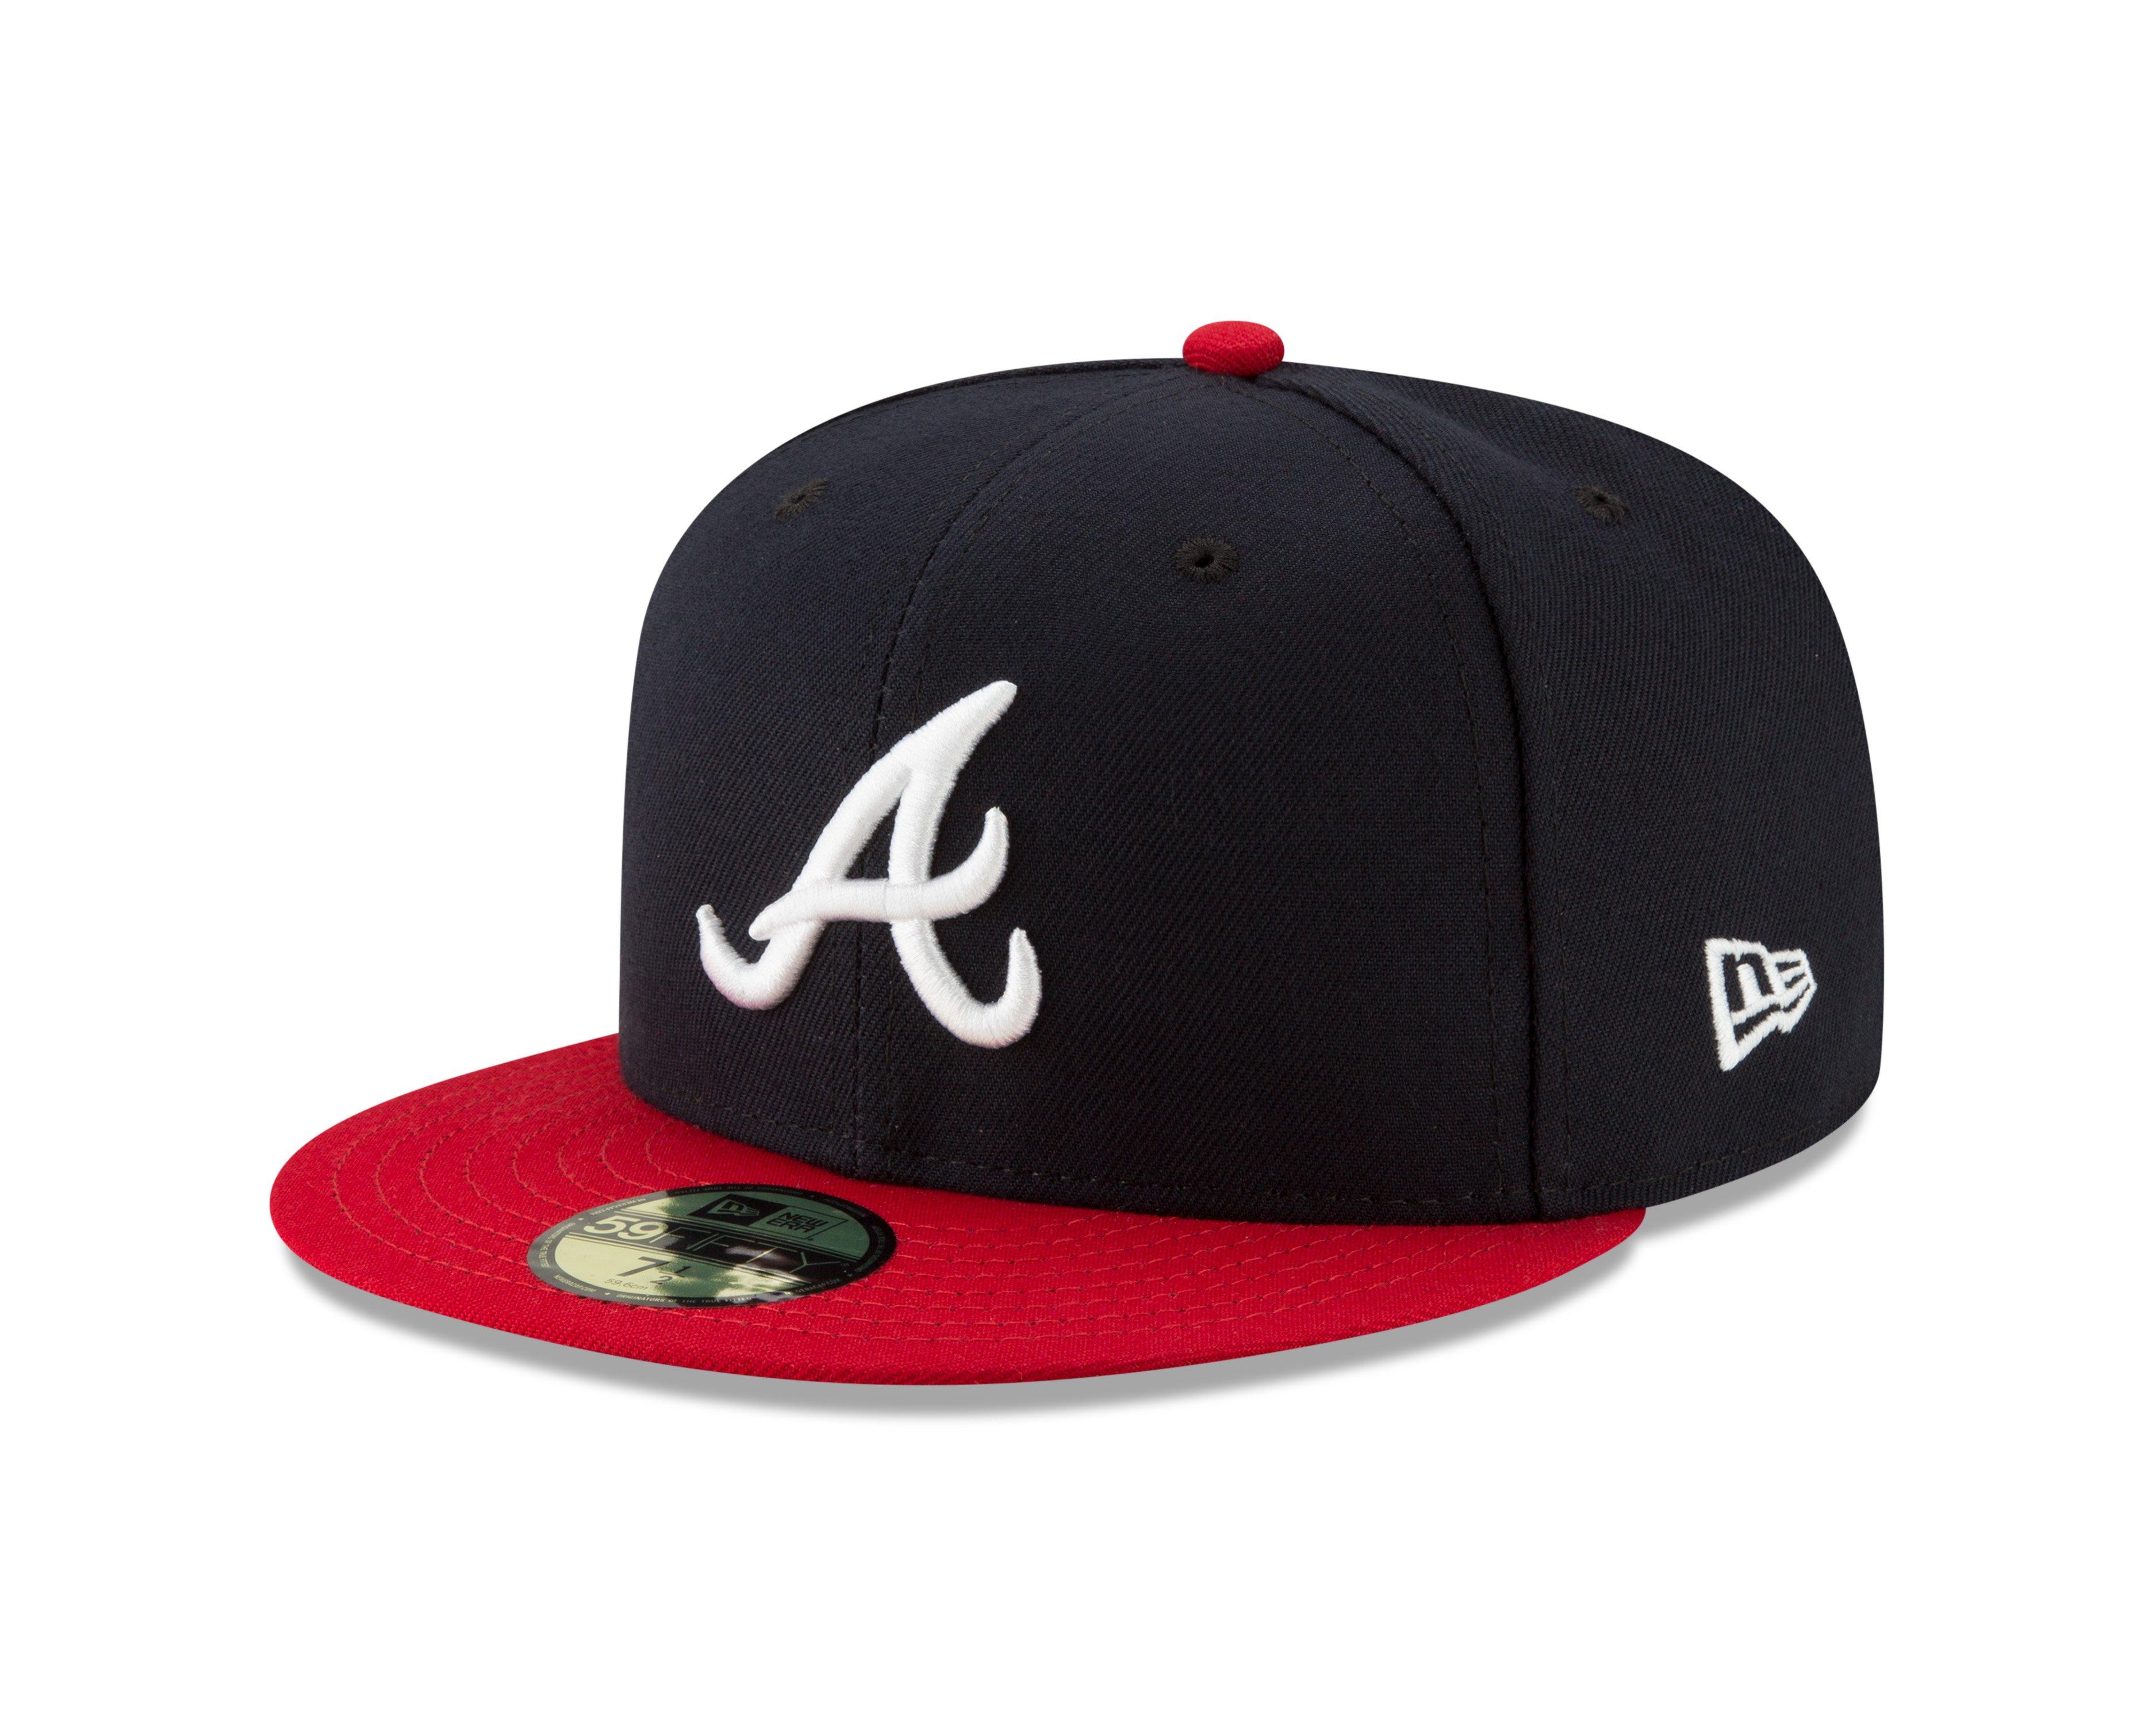 Where to get Atlanta MLB World Series 2021 championship shirts, hats,  jerseys and more 